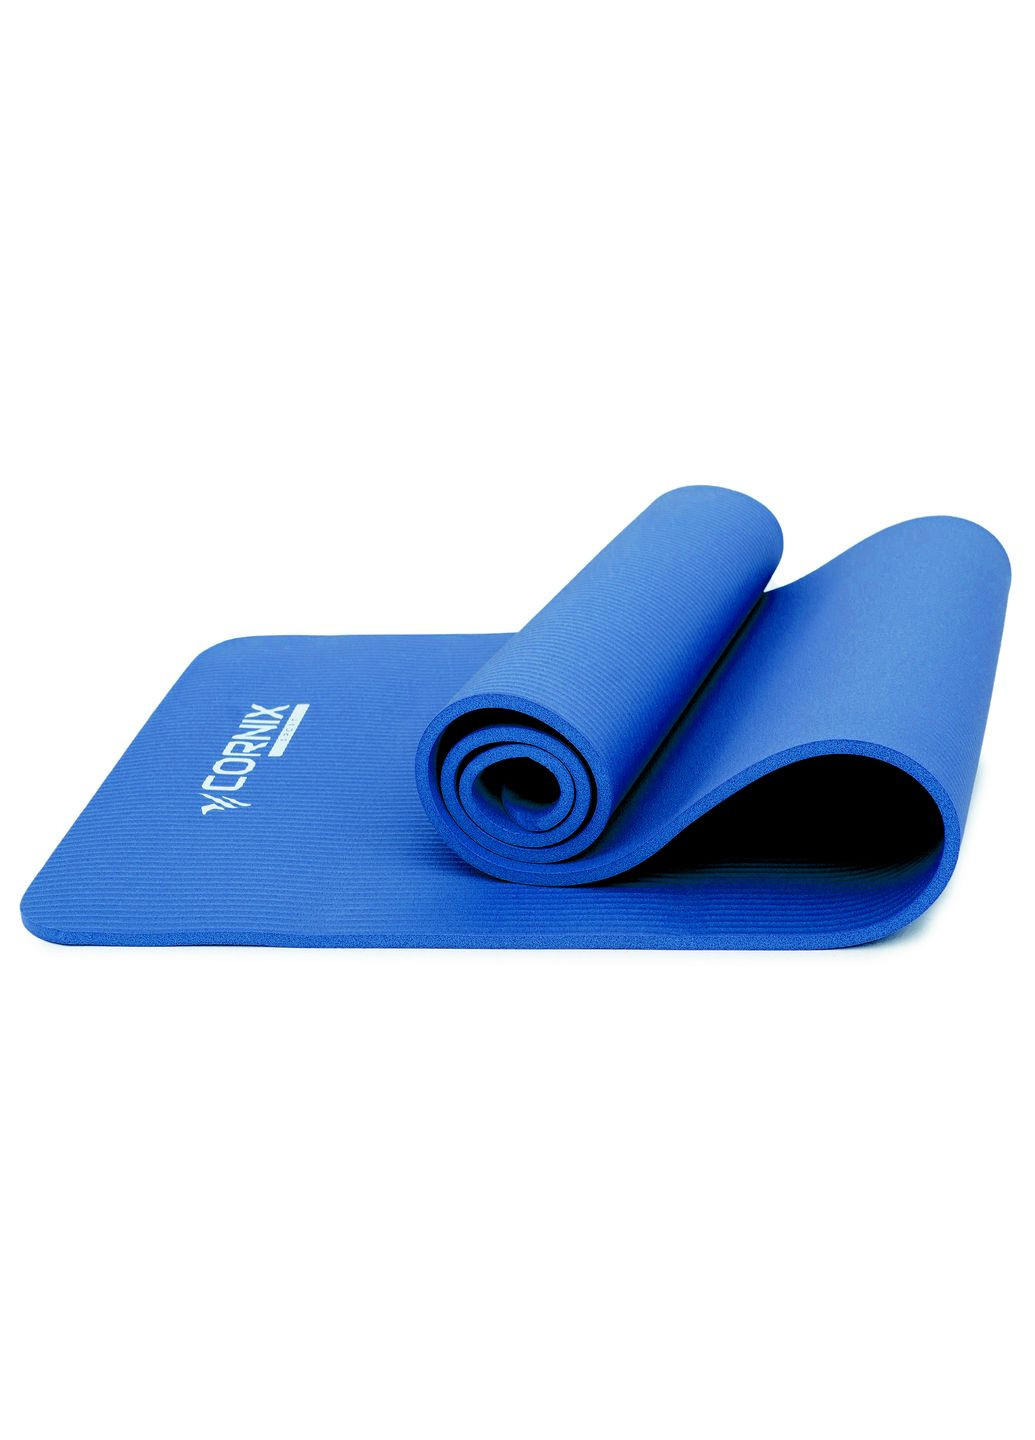 Килимок спортивний NBR 183 x 61 x 1 cм для йоги та фітнесу XR0009 Blue Cornix xr-0009 (275333958)